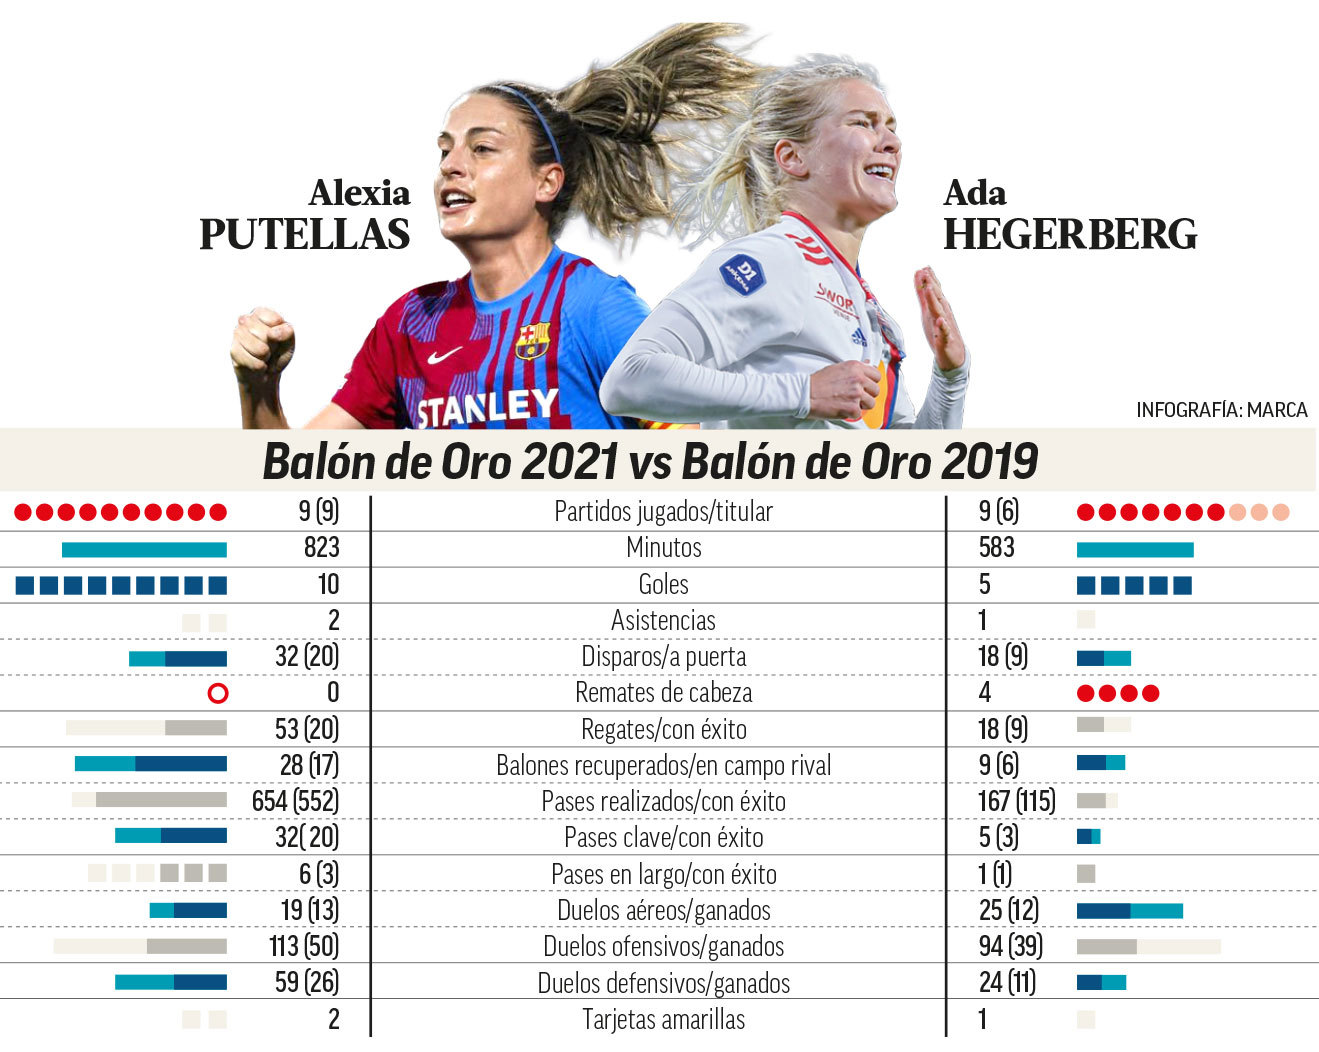 Comparativa de datos en Champions League entre Alexia Putellas y Ada Hegerberg.